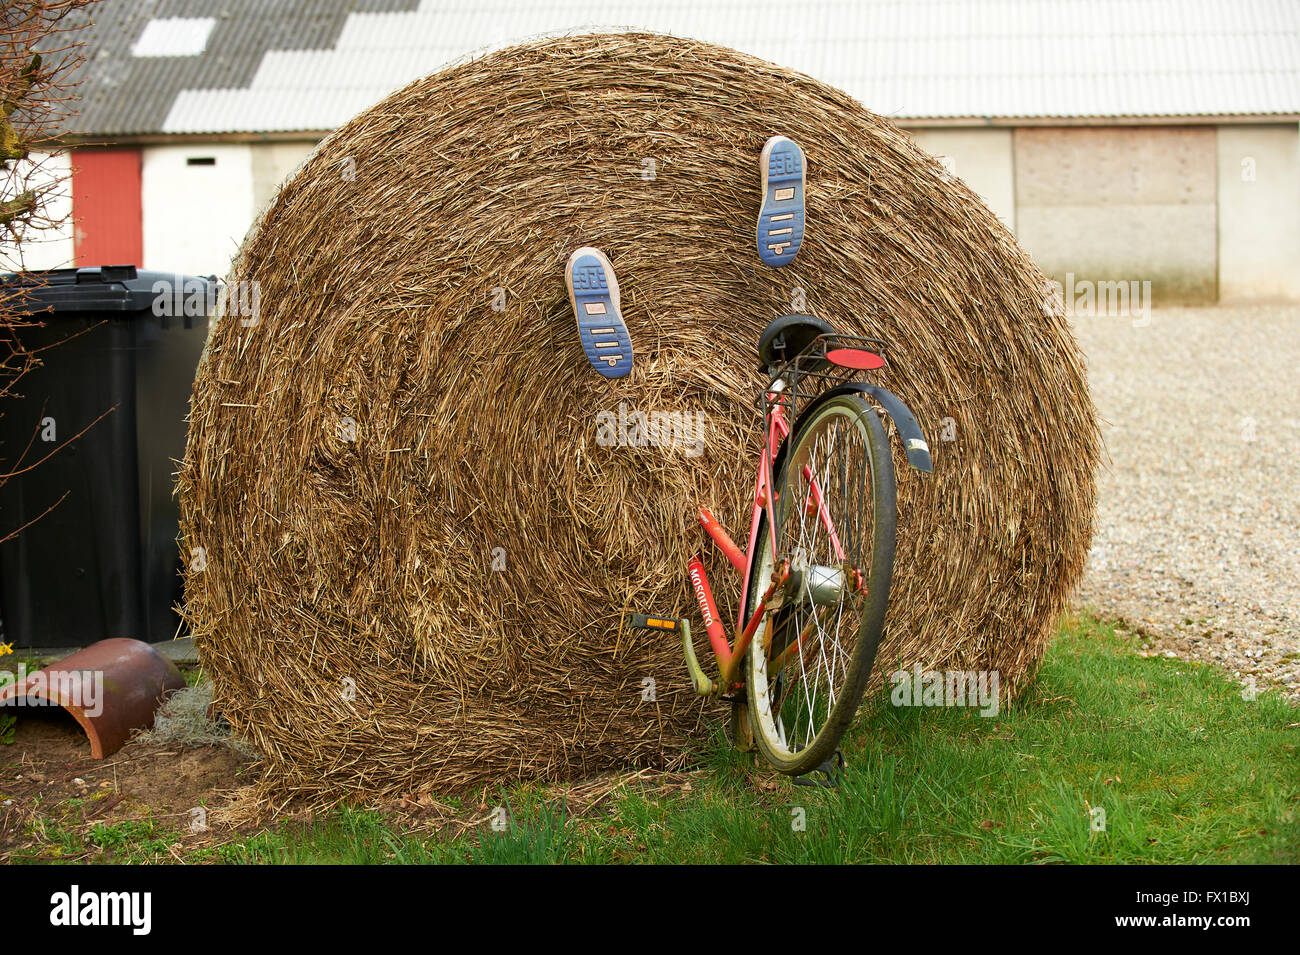 Großballen Stroh mit Fahrrad und Gummistiefel montiert, die aussehen, als ob die Person Reiten sie in den Ballen verschwunden ist Stockfoto